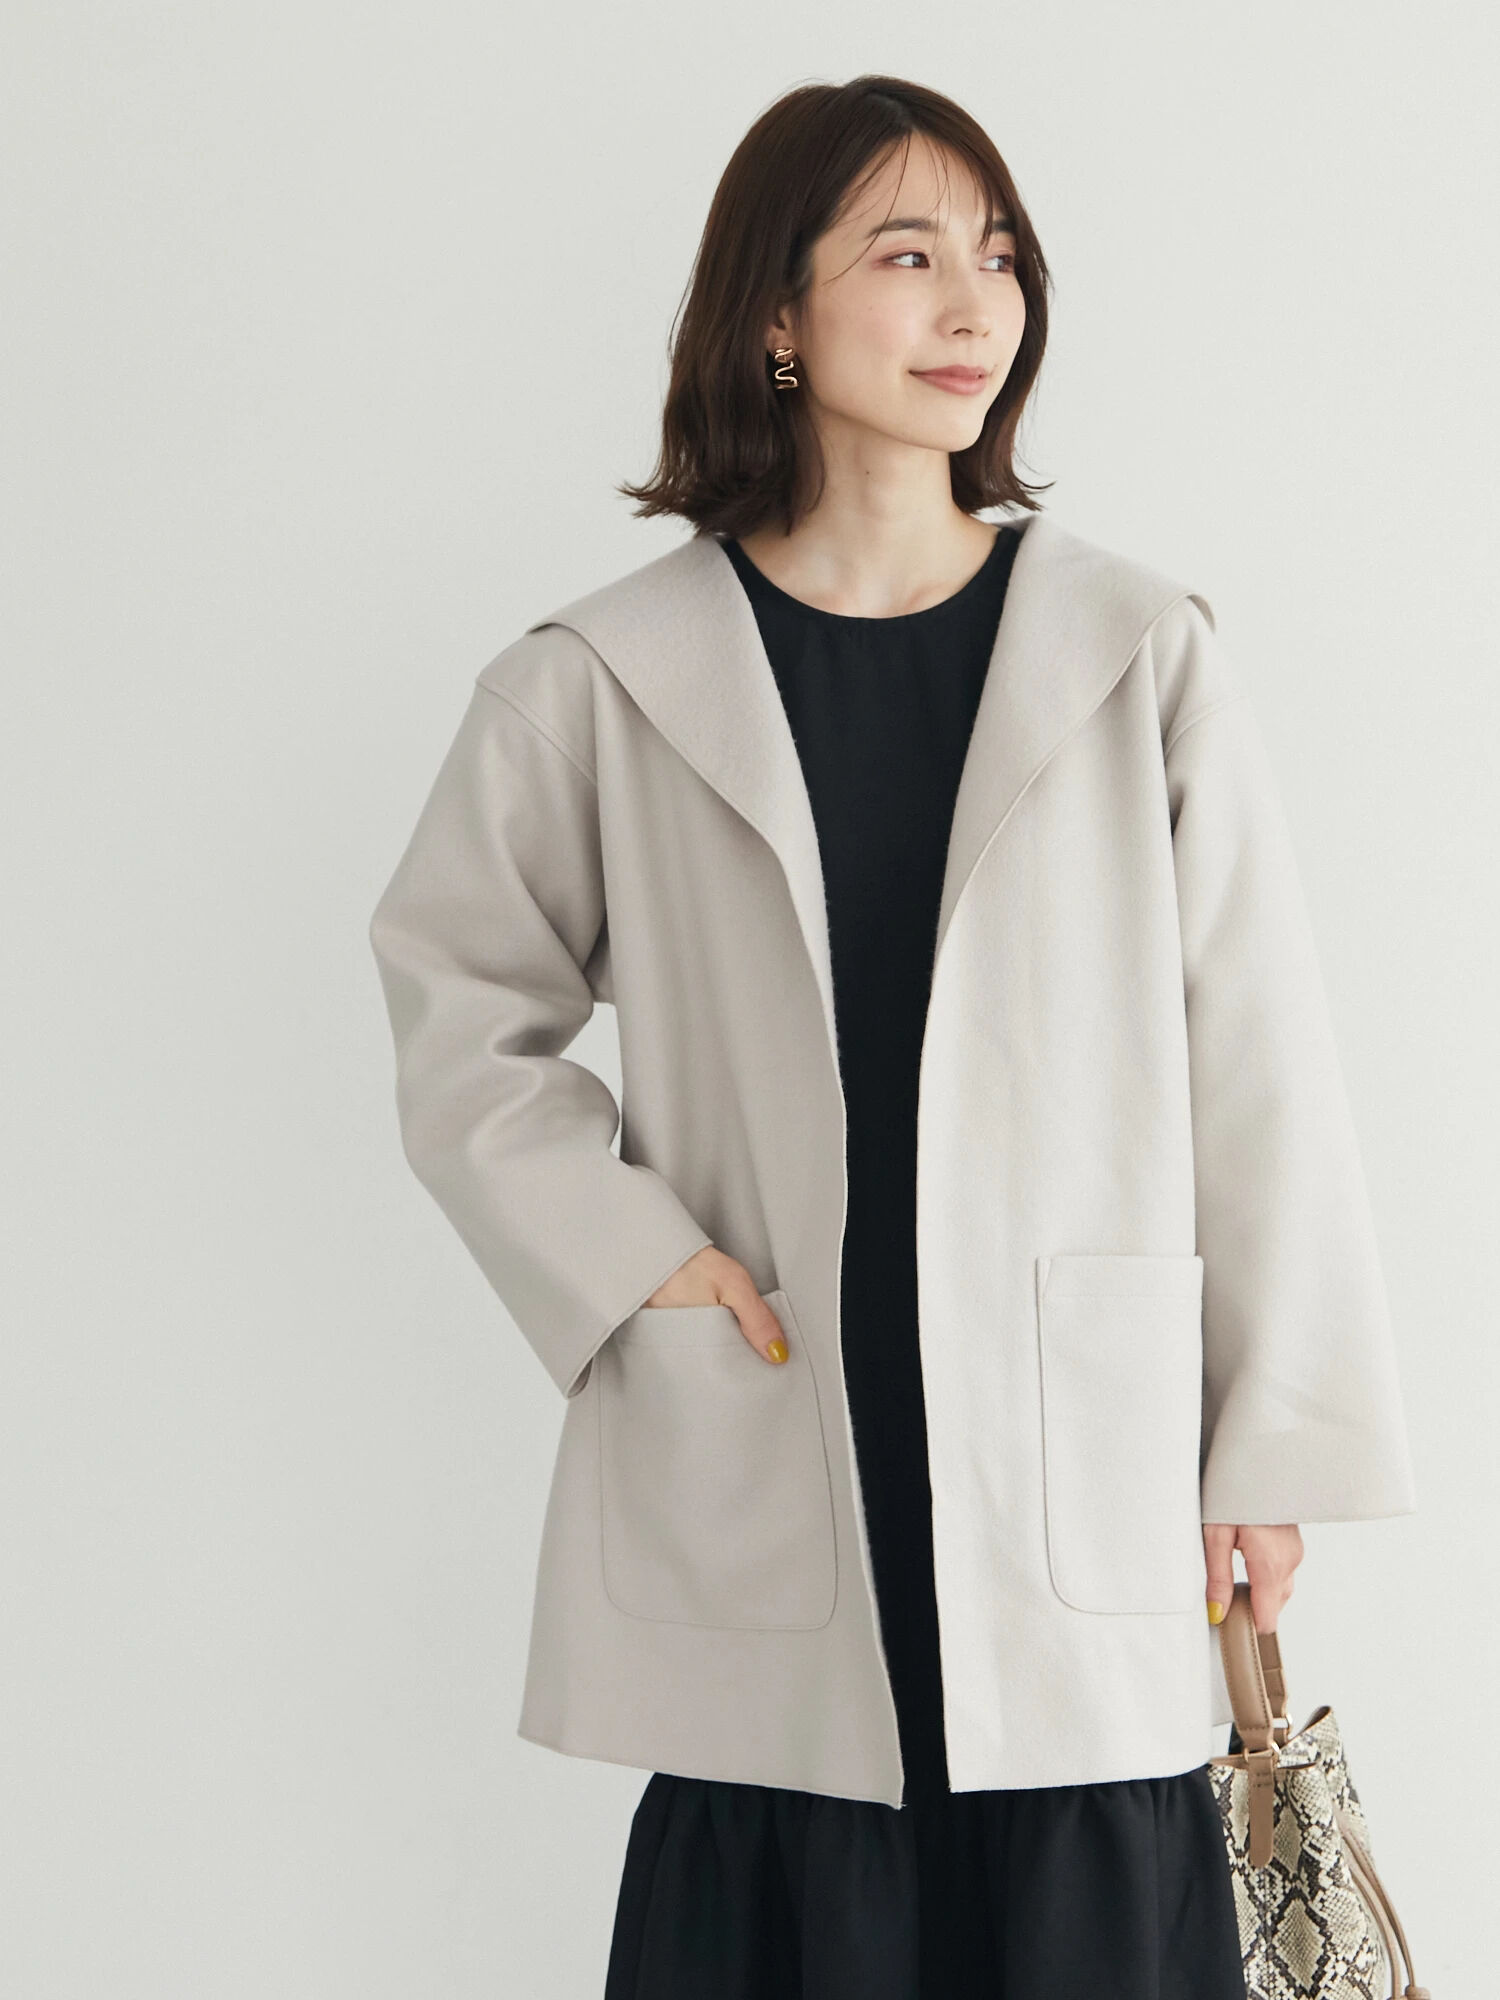 discount 69% WOMEN FASHION Coats Casual Zara Long coat Beige XL 